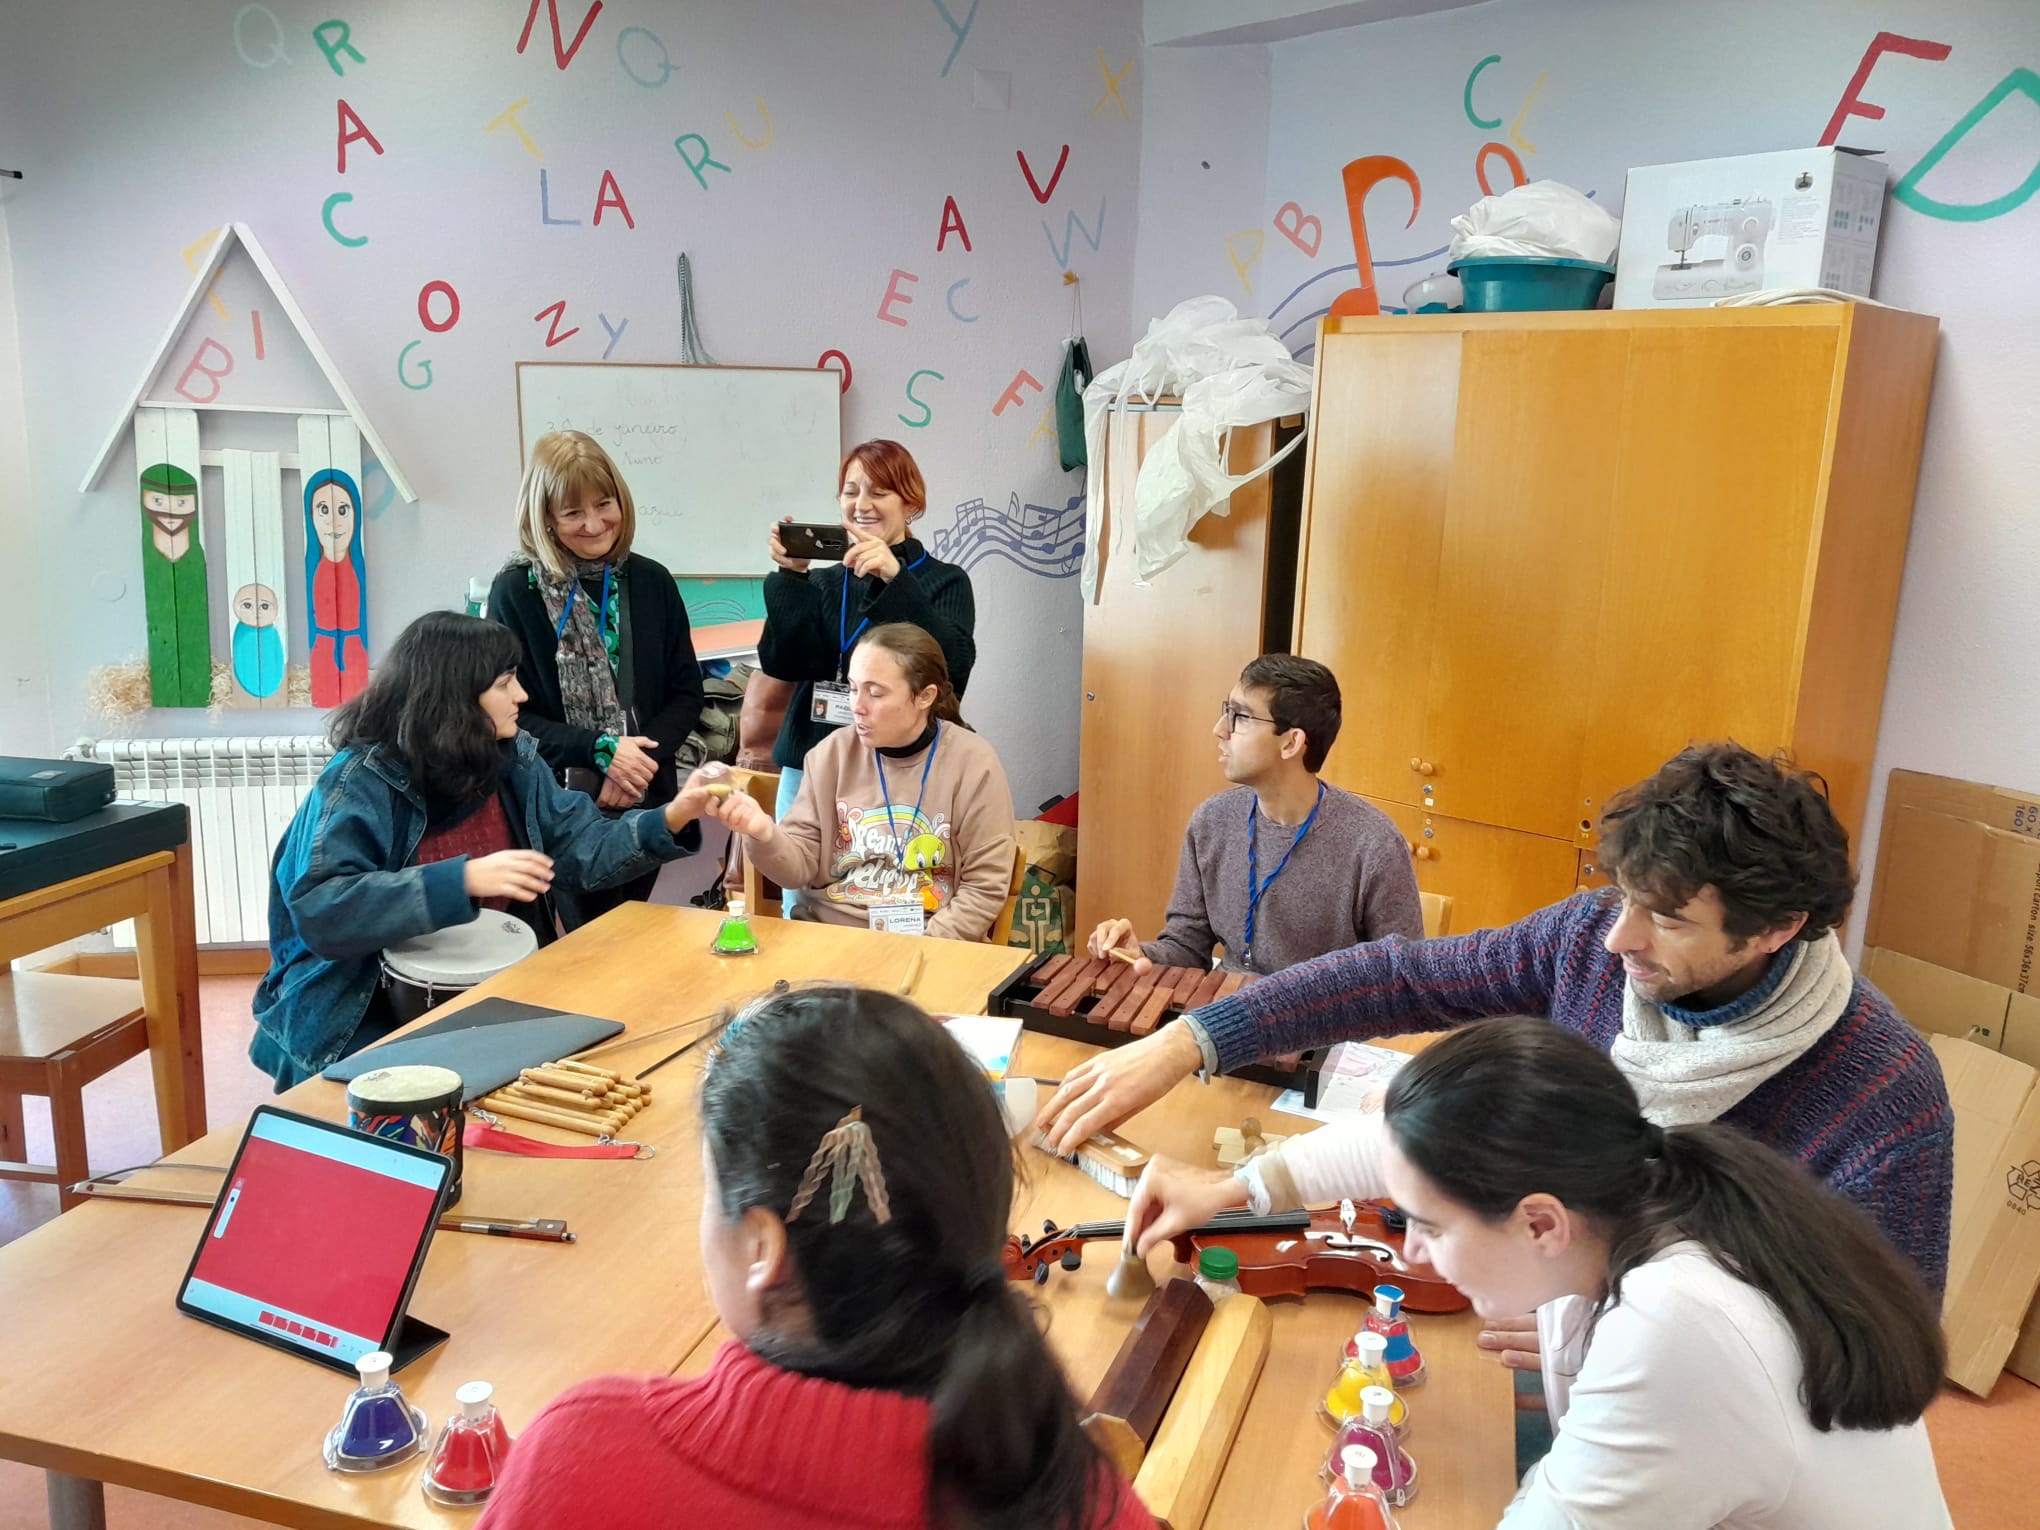 Primer día de la experiencia educativa “Erasmus” en Portugal: el idioma no es una barrera